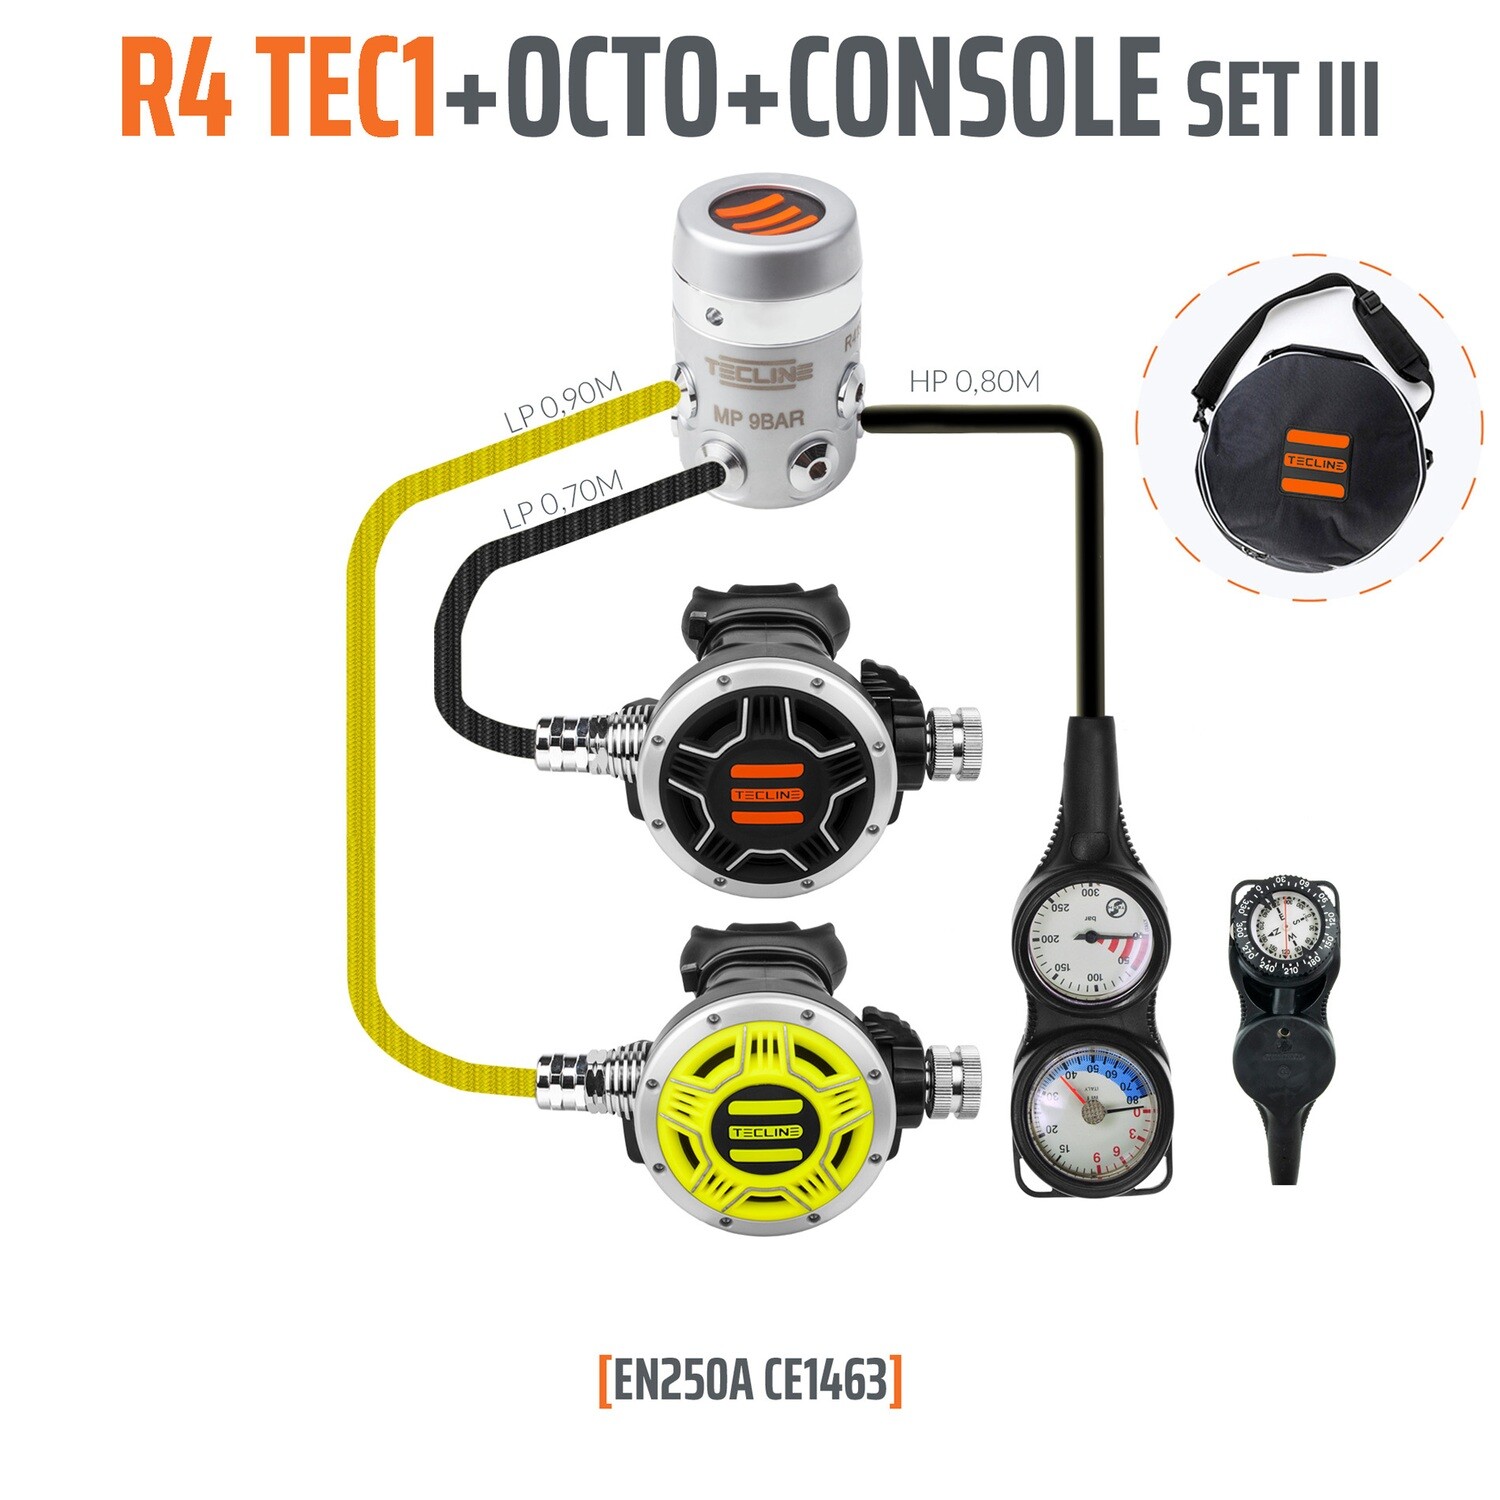 regulator R4-TEC1 SET3